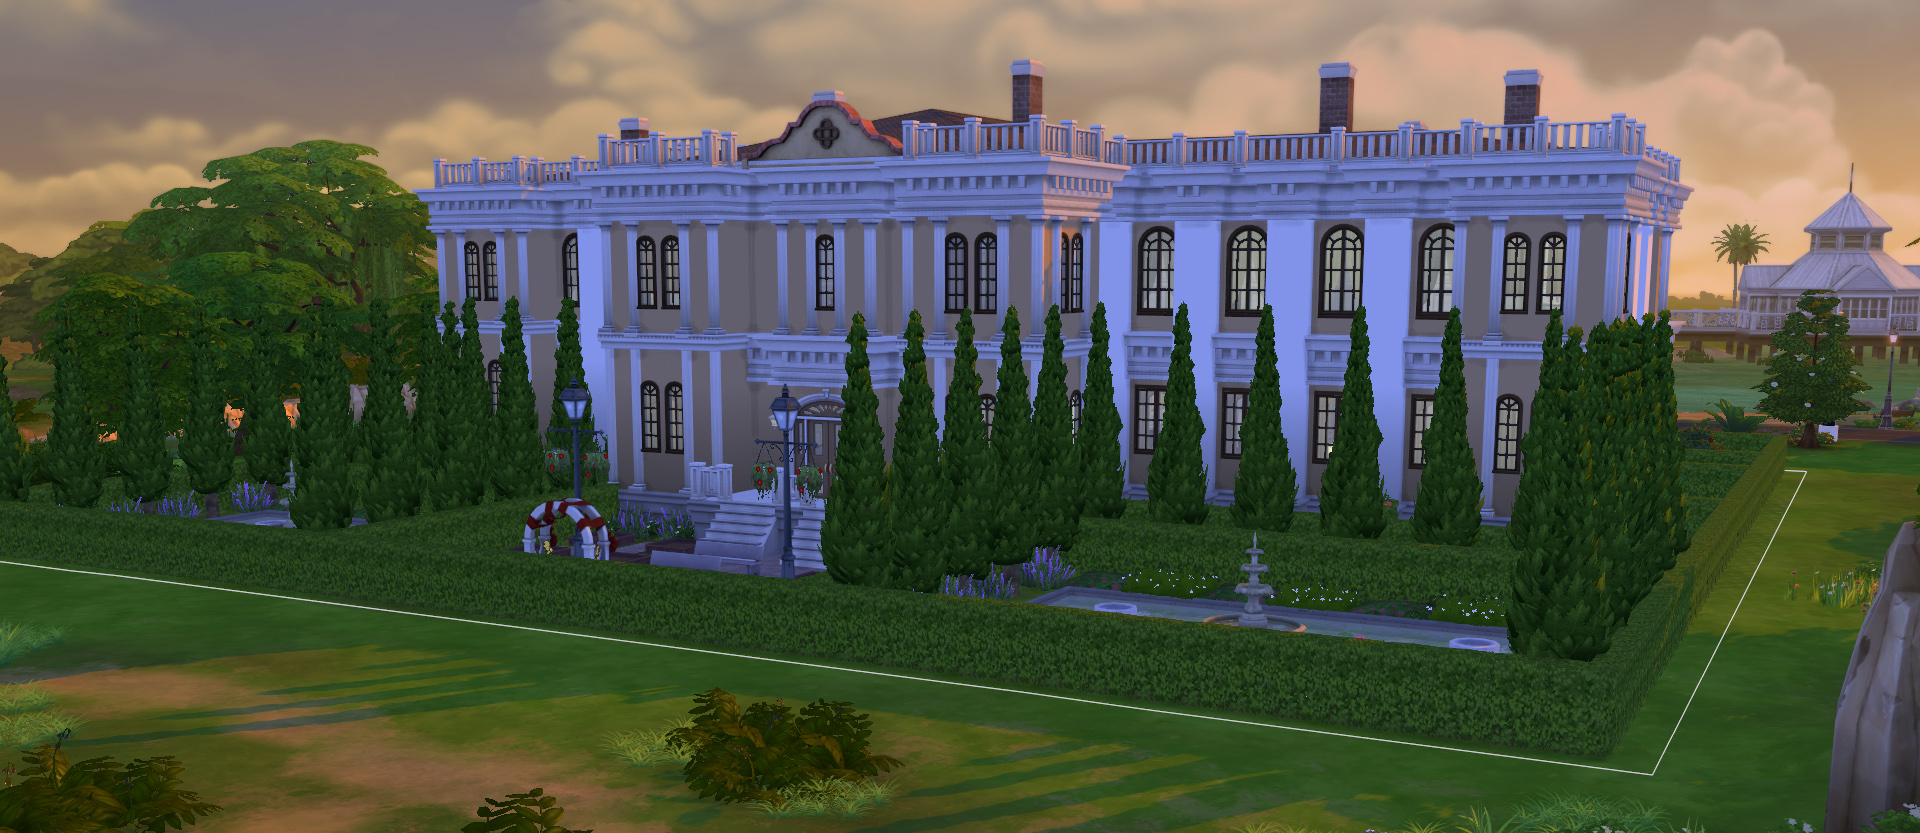 Mod The Sims - Chateau de Lorraine